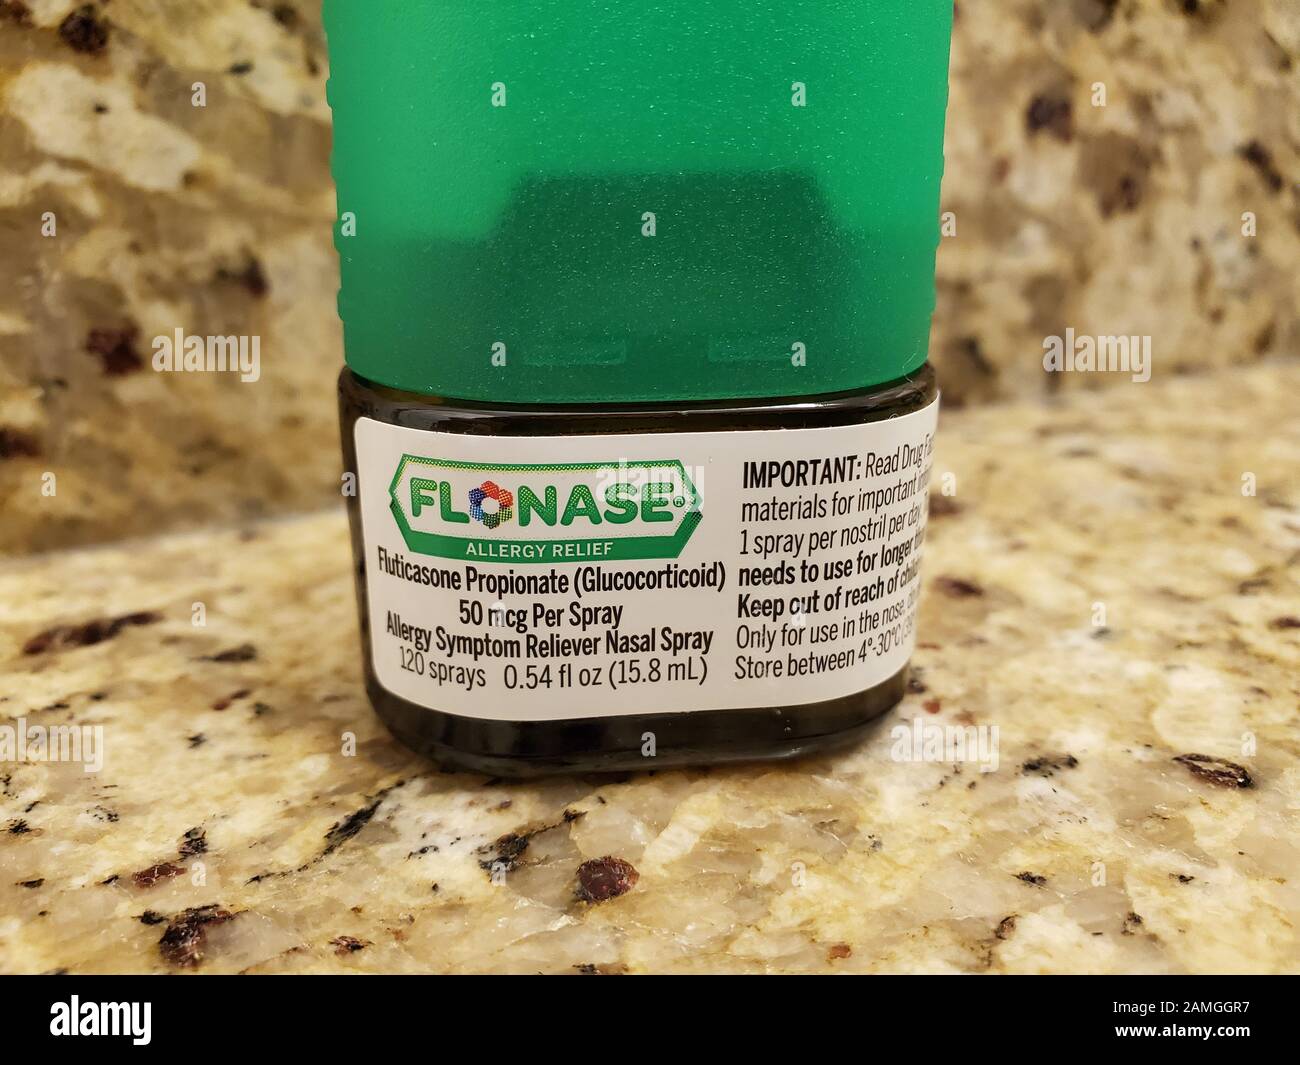 Primer plano del aerosol nasal de Flonase (Fluticasone), un esteroide  inhalado que se utiliza a menudo para tratar las alergias estacionales, 27  de noviembre de 2019 Fotografía de stock - Alamy